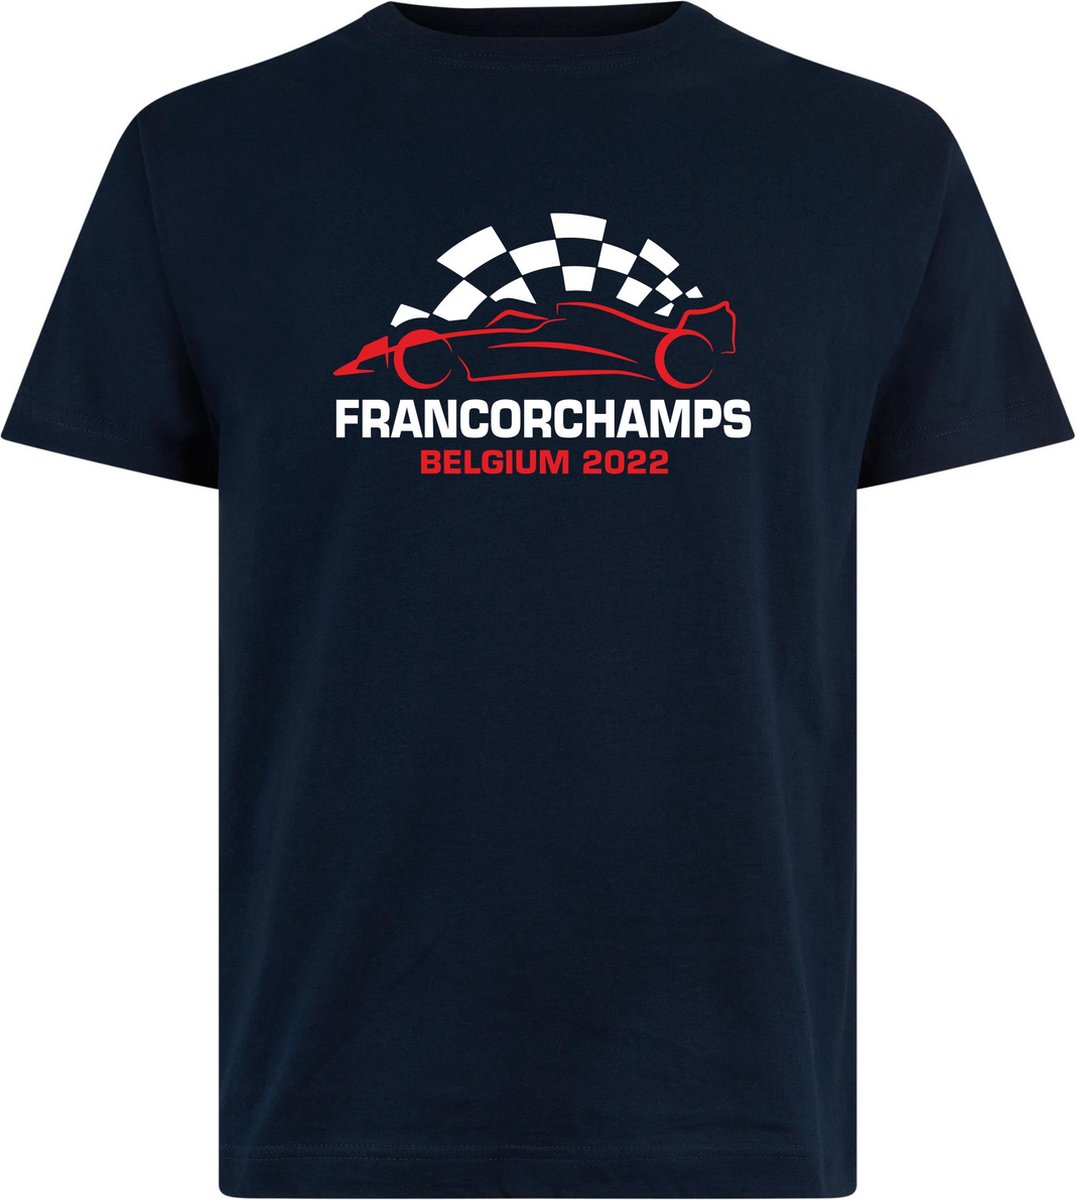 T-shirt kinderen Francorchamps Belgium 2022 met raceauto | Max Verstappen / Red Bull Racing / Formule 1 fan | Grand Prix Circuit Spa-Francorchamps | kleding shirt | Navy | maat 92